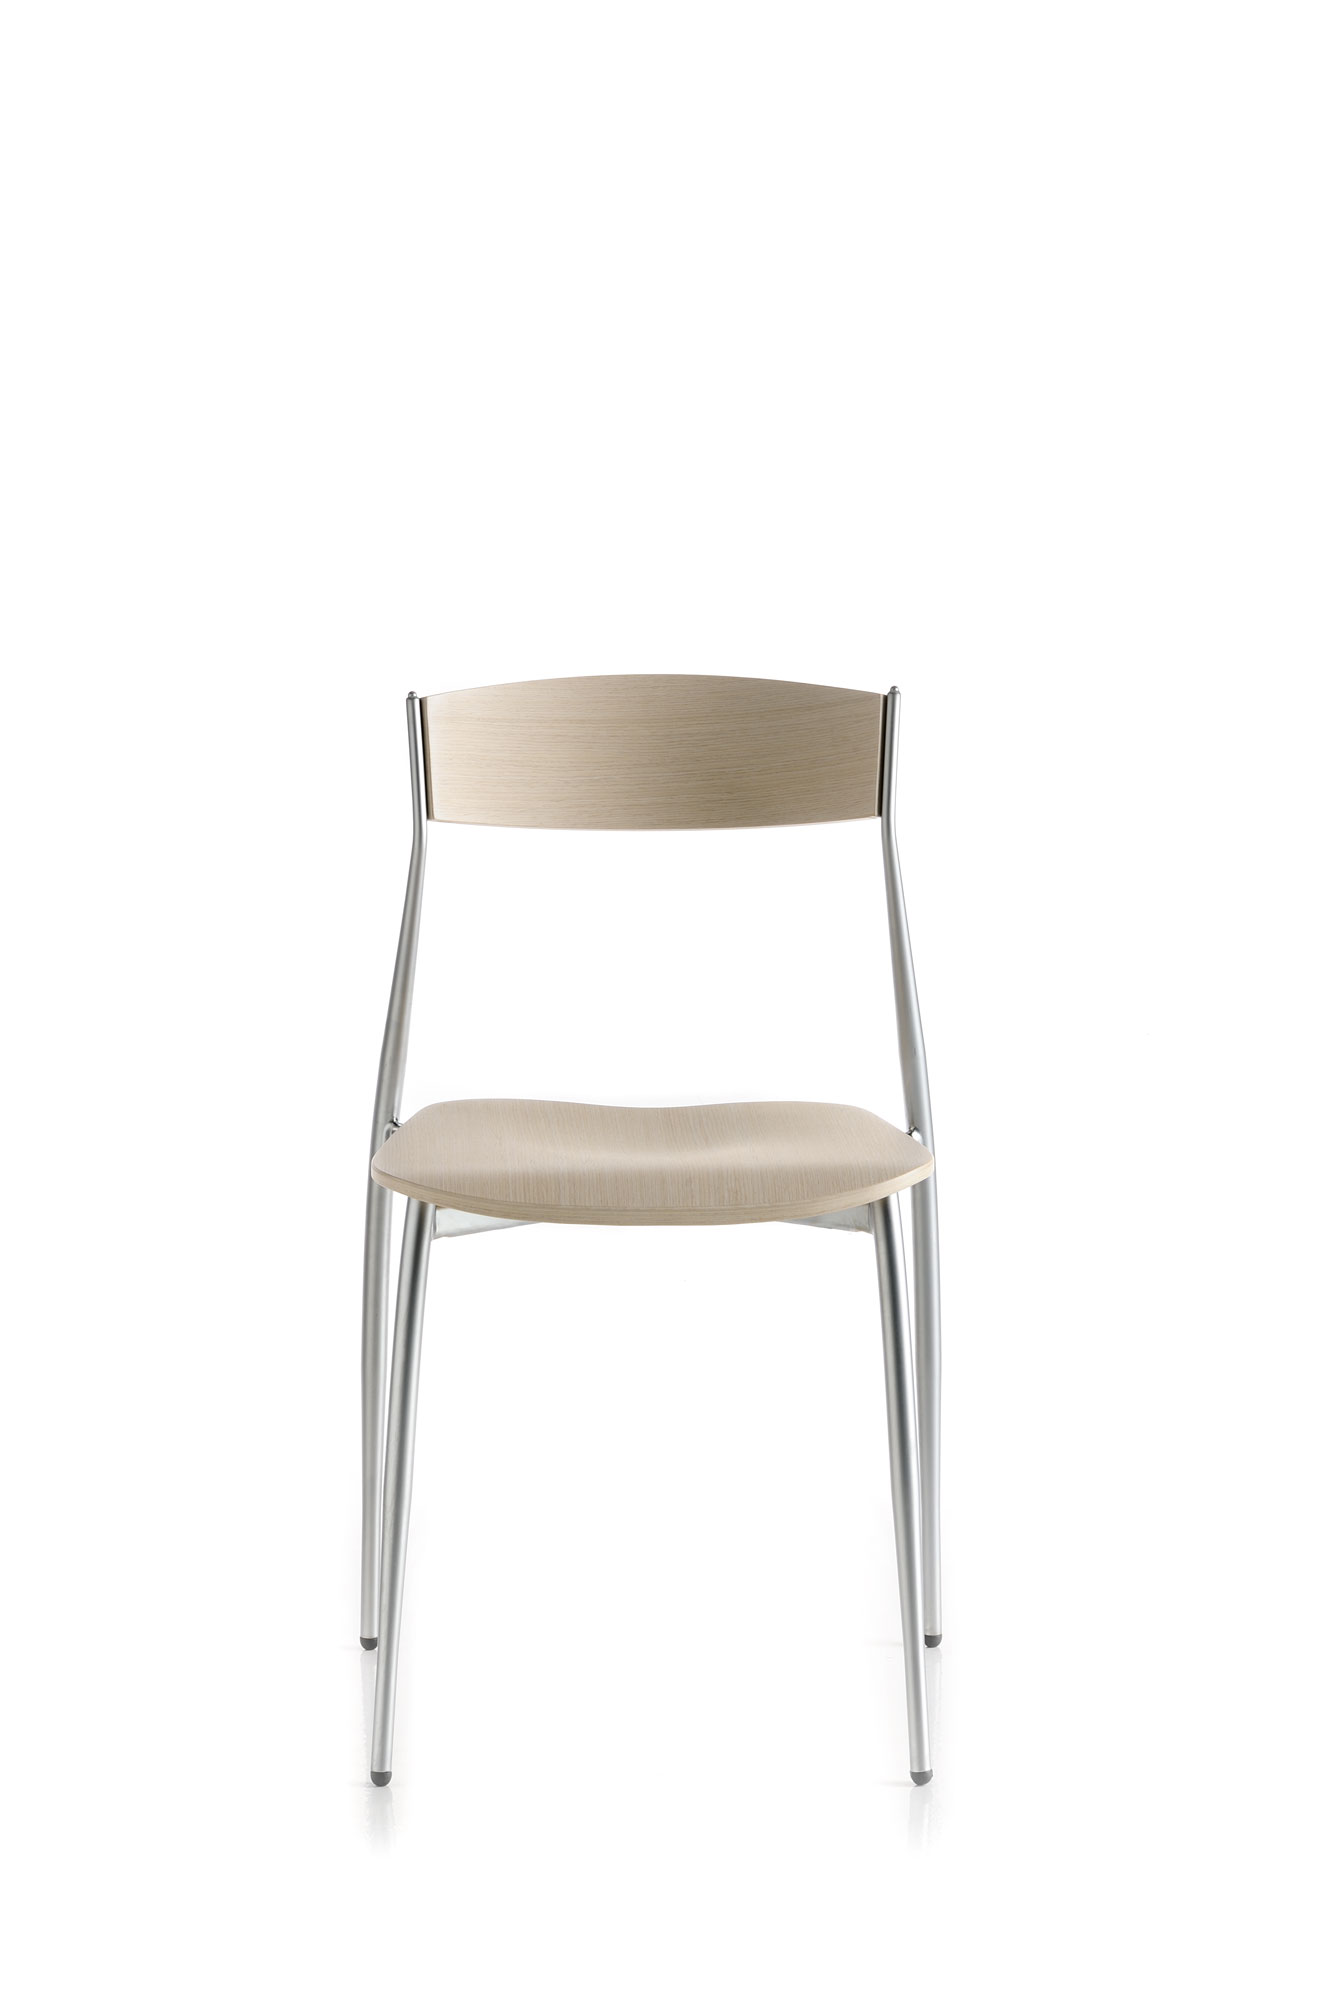 baba sedia rovere sbiancato di sergio mian per altek italia design